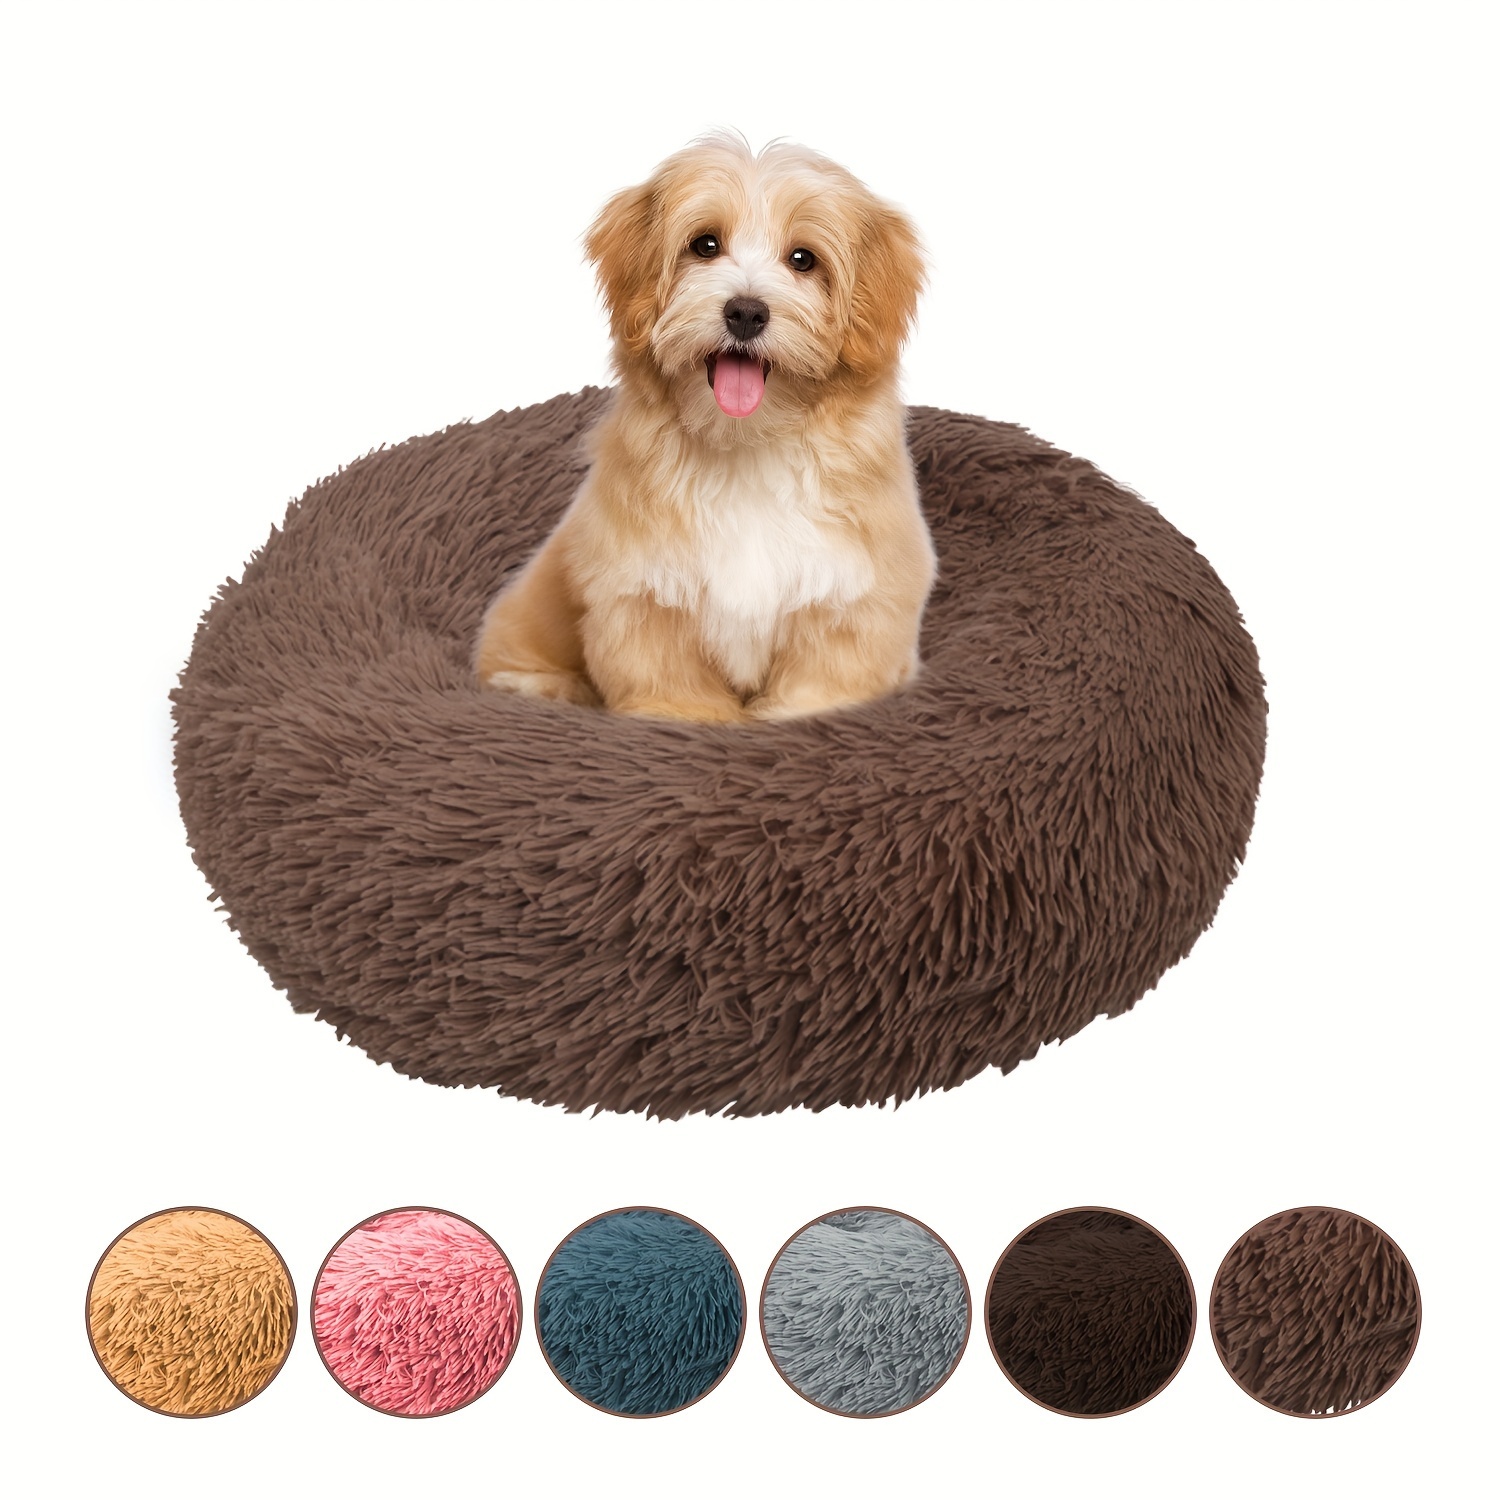 HOMOOK Rampe de lit autoportante pour petits chiens avec surface  antidérapante pour lits hauts, longueur réglable de 94 cm, supporte les  chats et